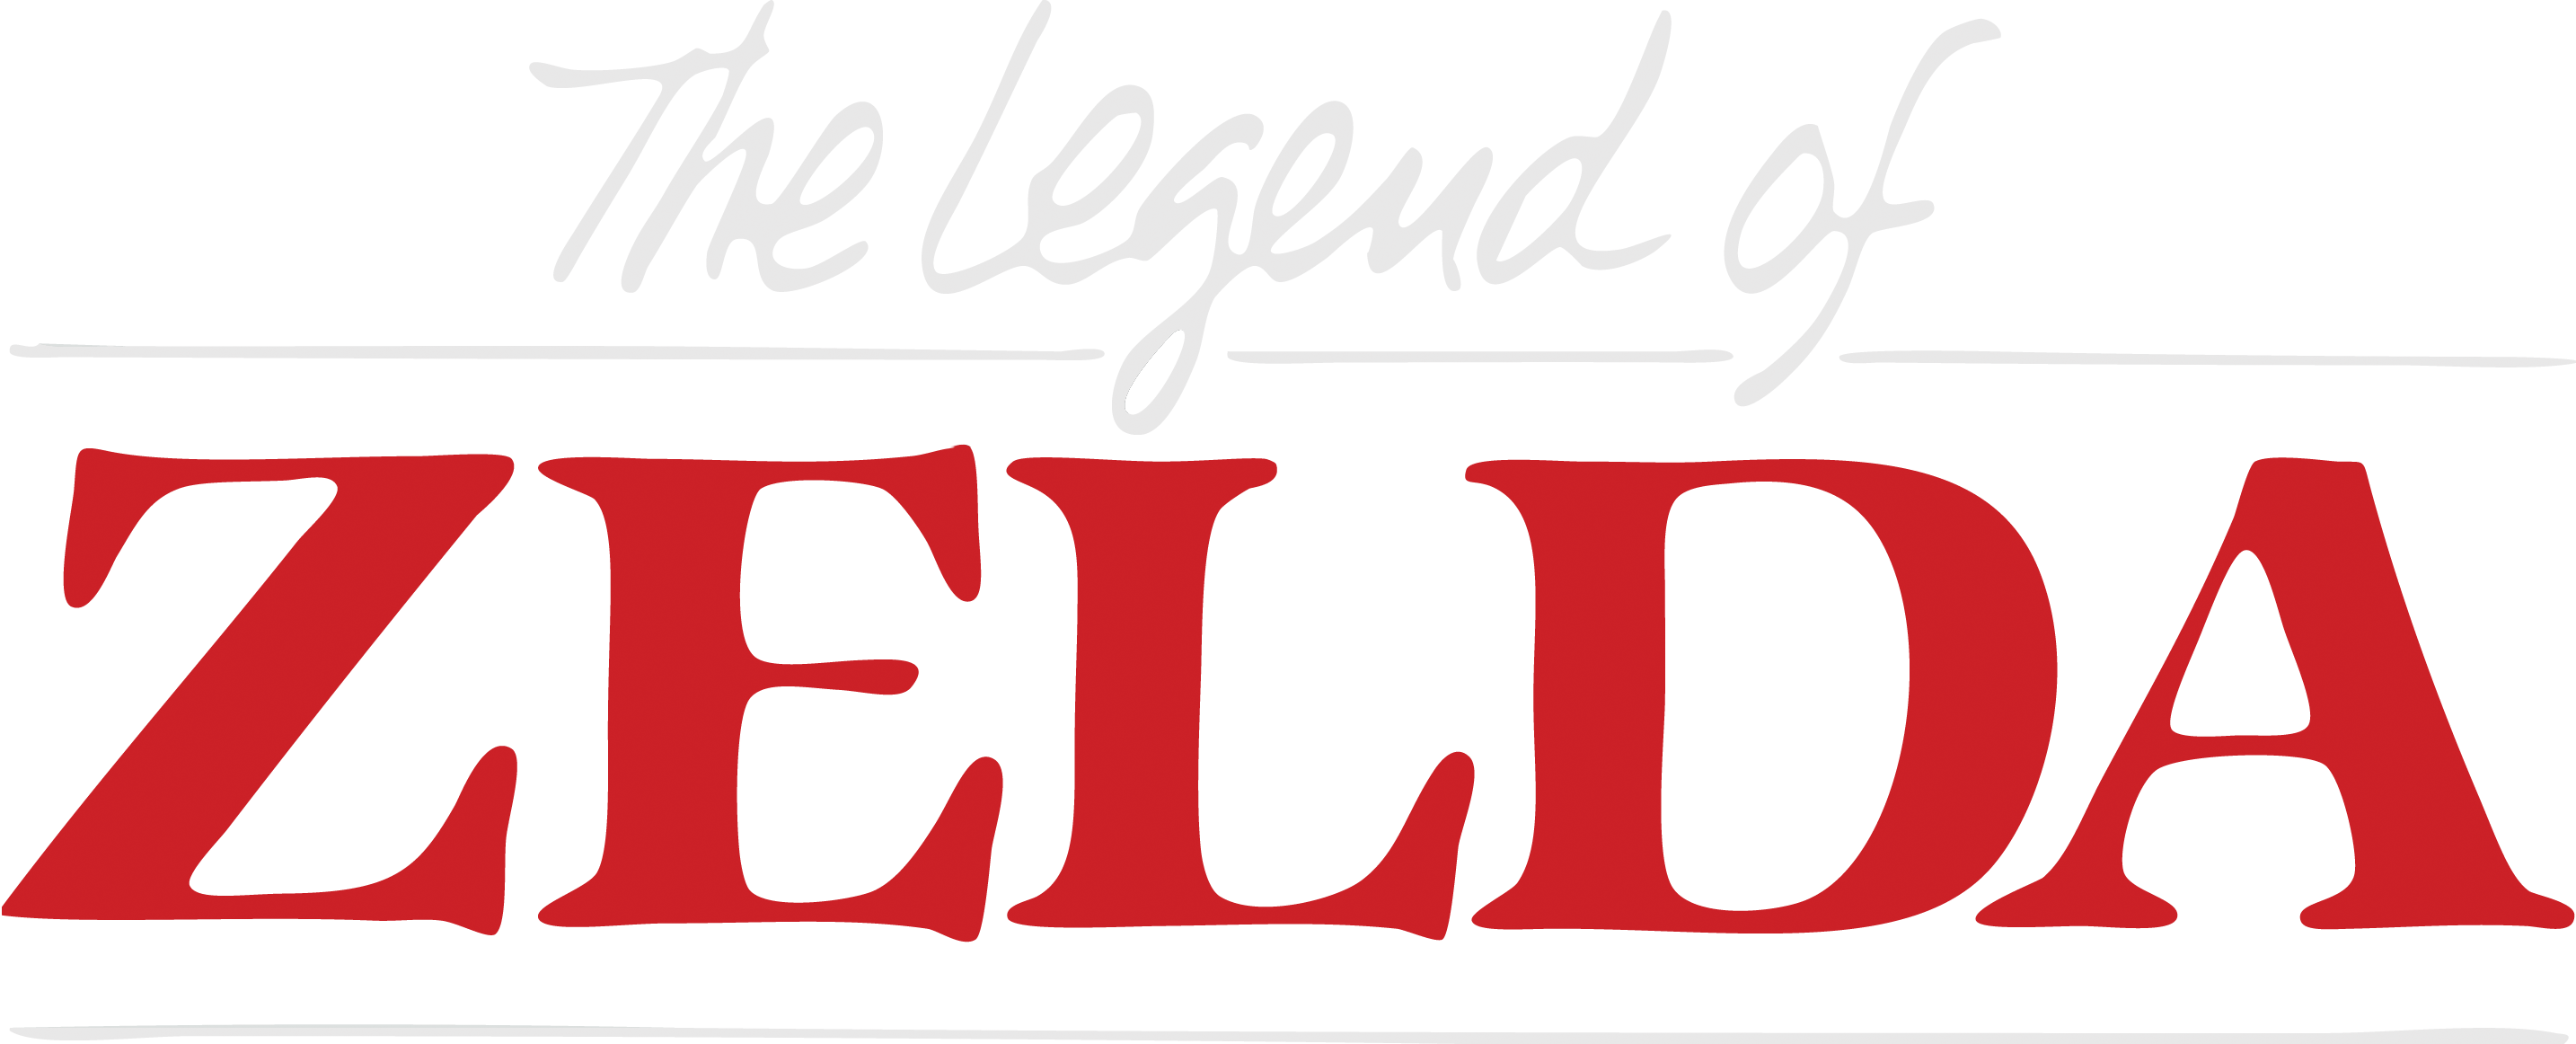 The Legend Of Zelda Logo Transparent PNG Image